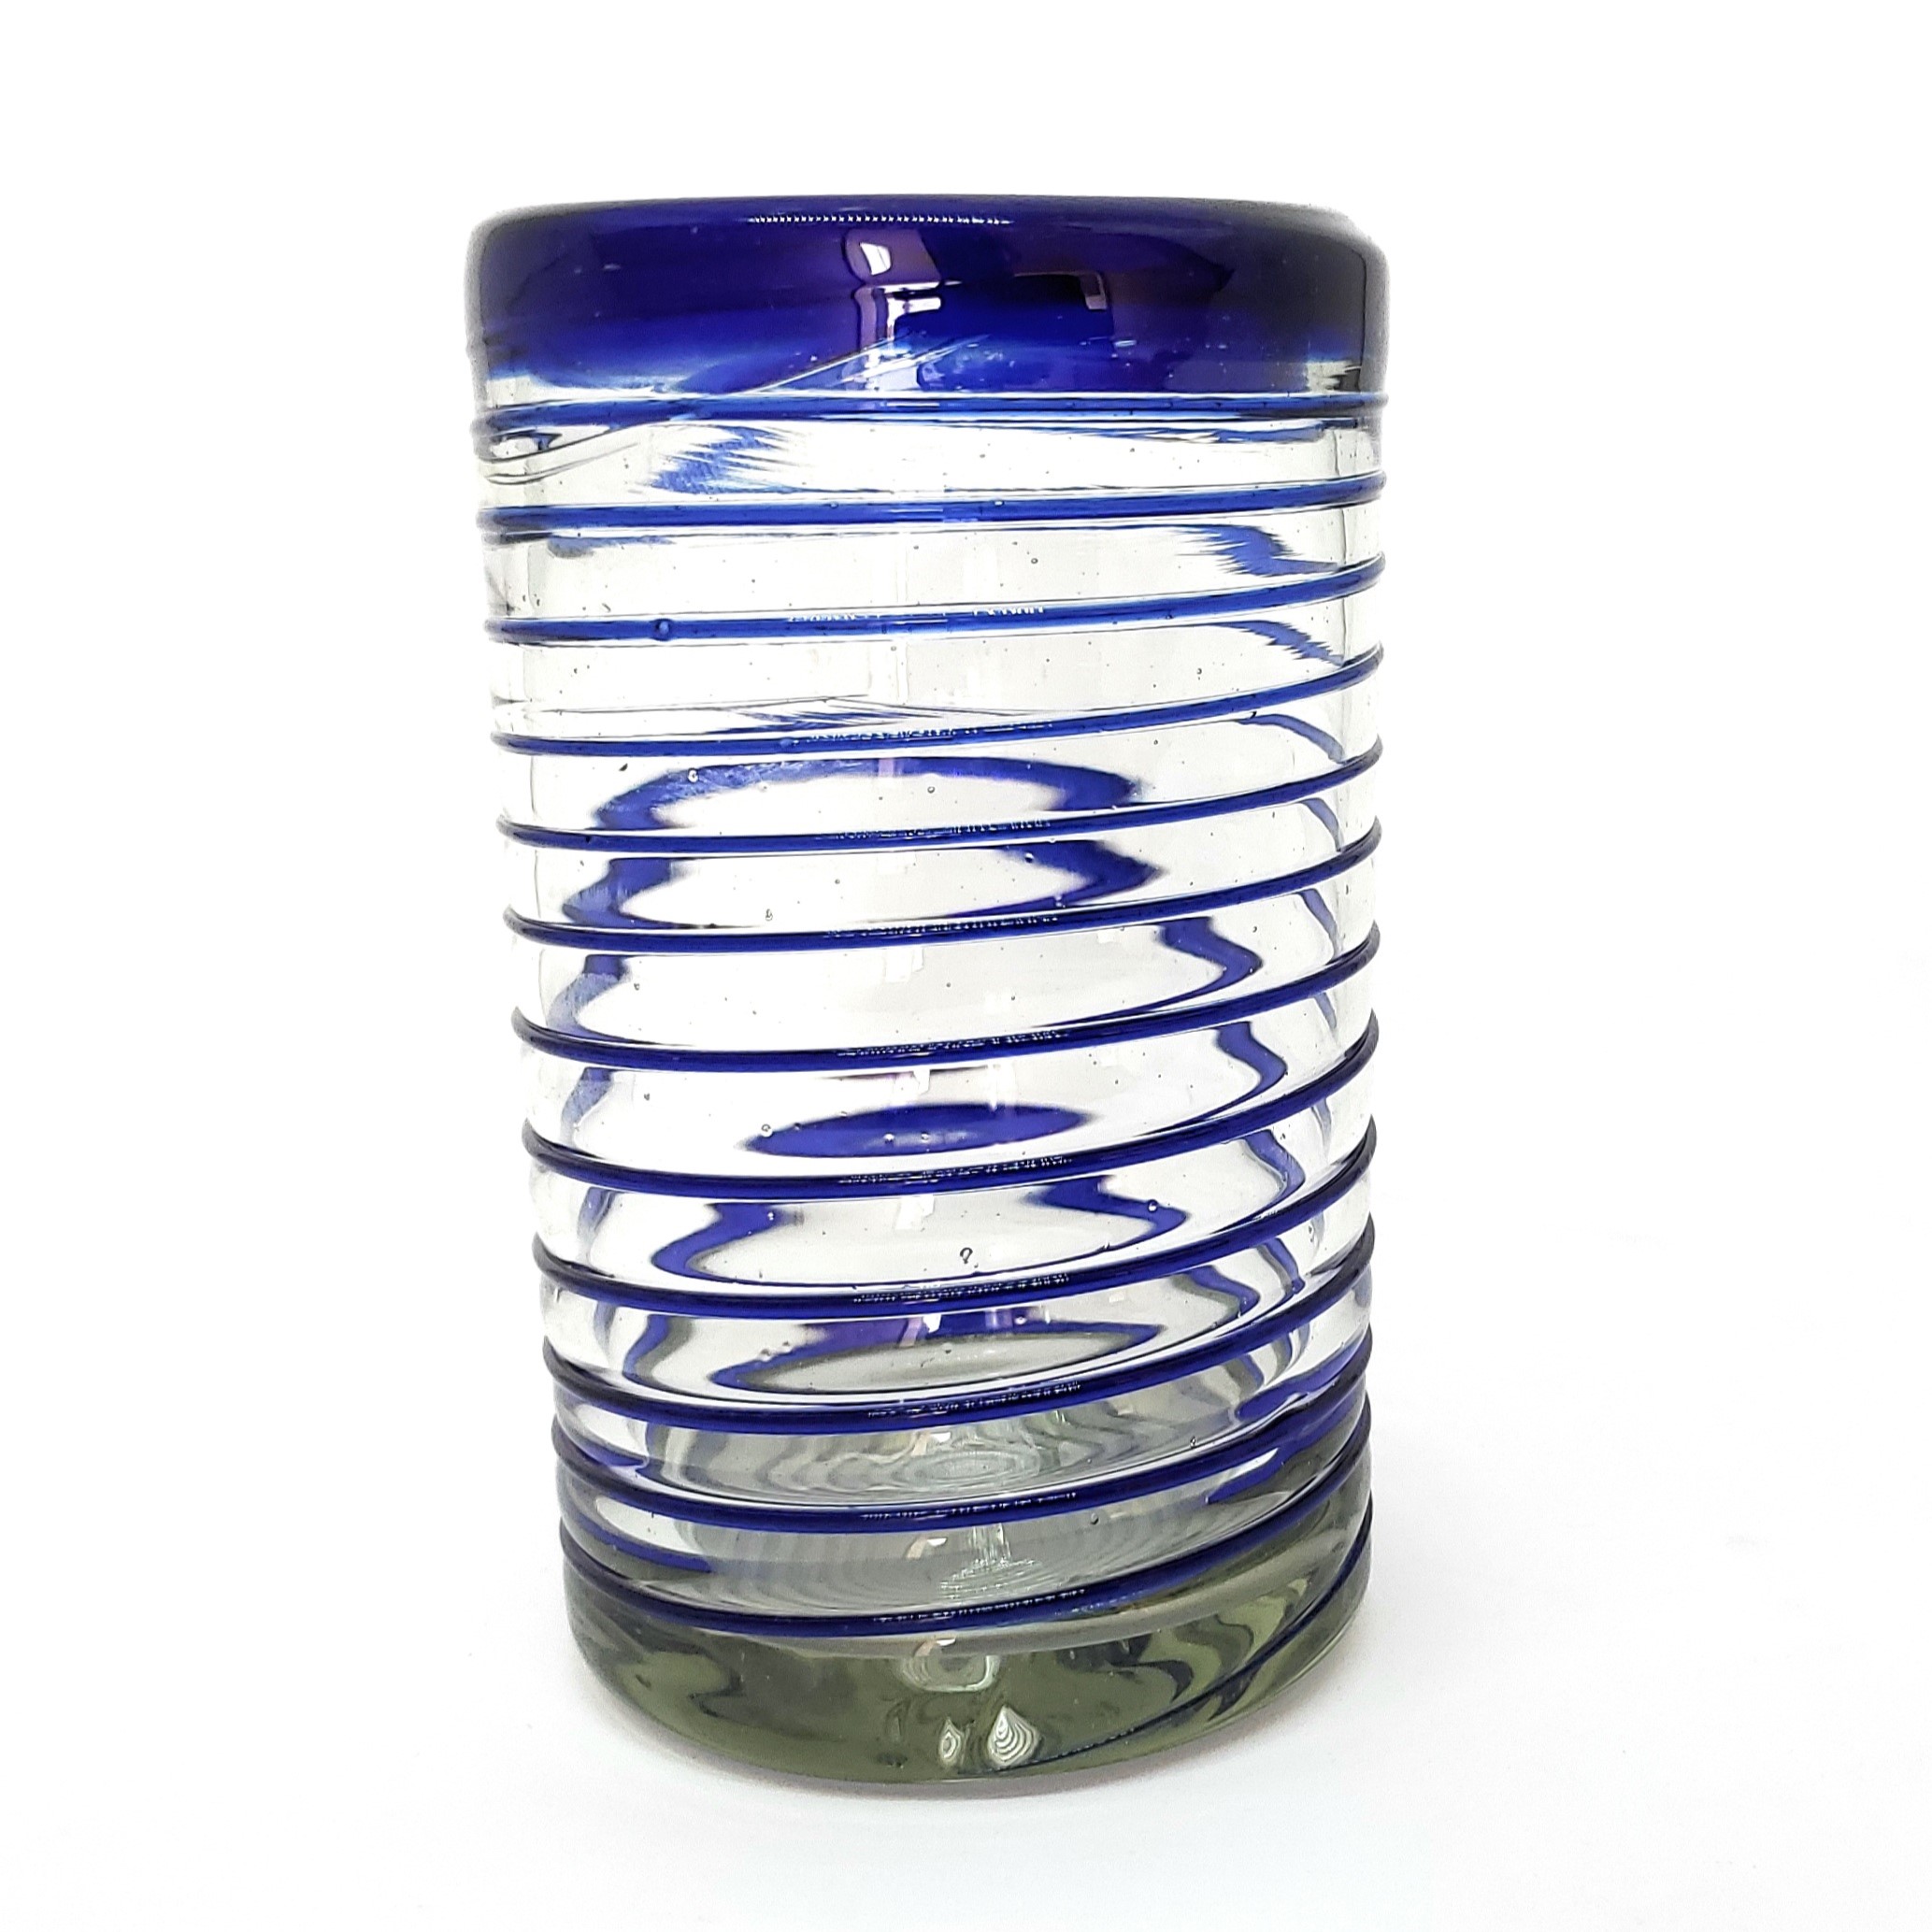  / Cobalt Blue Spiral 14 oz Drinking Glasses 